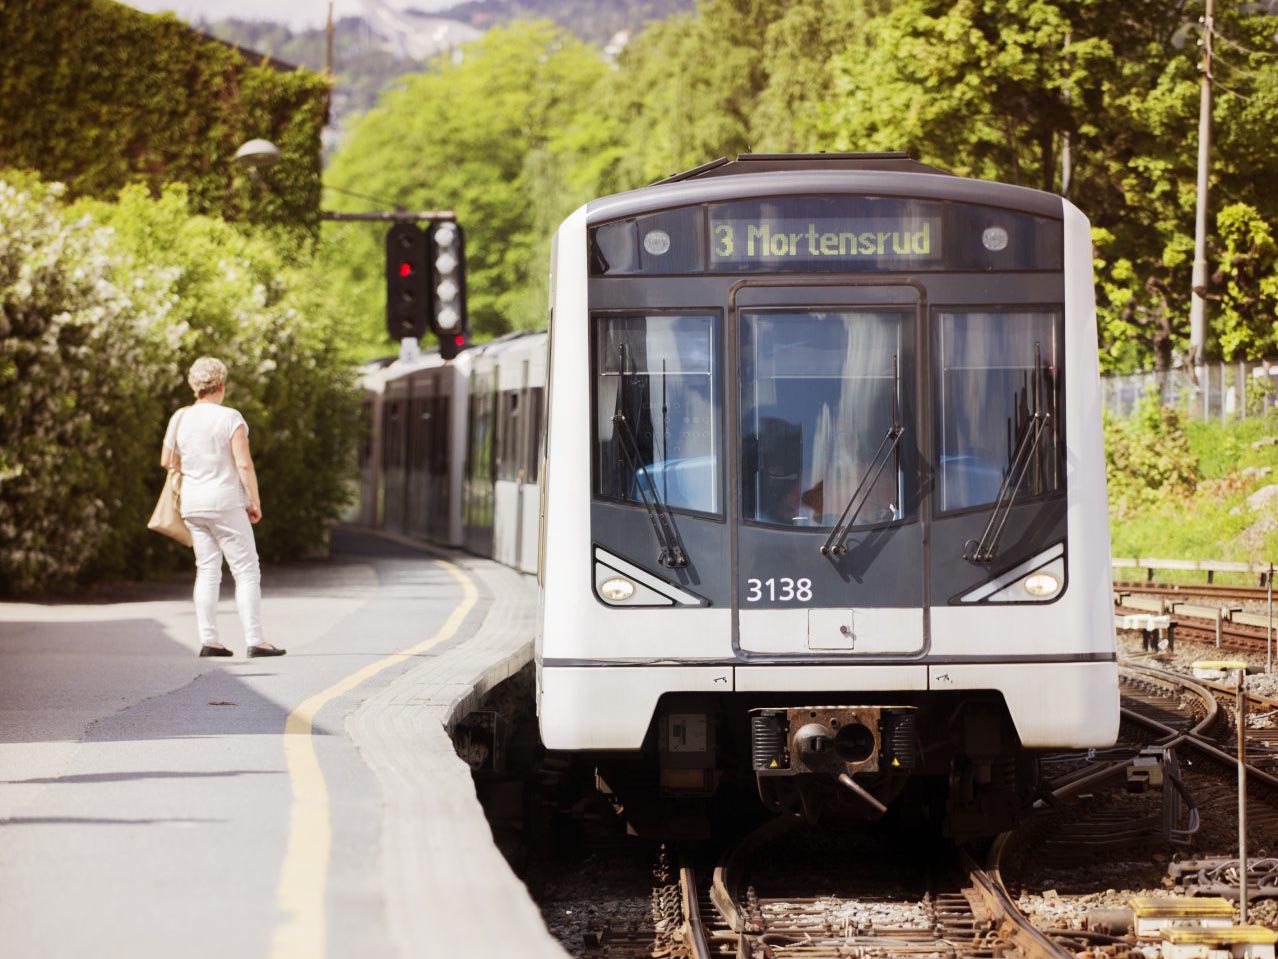 En T-bane merket «3 mortensrud» nærmer seg en stasjon mens en person venter på å gå ombord, med grønt bladverk i bakgrunnen.